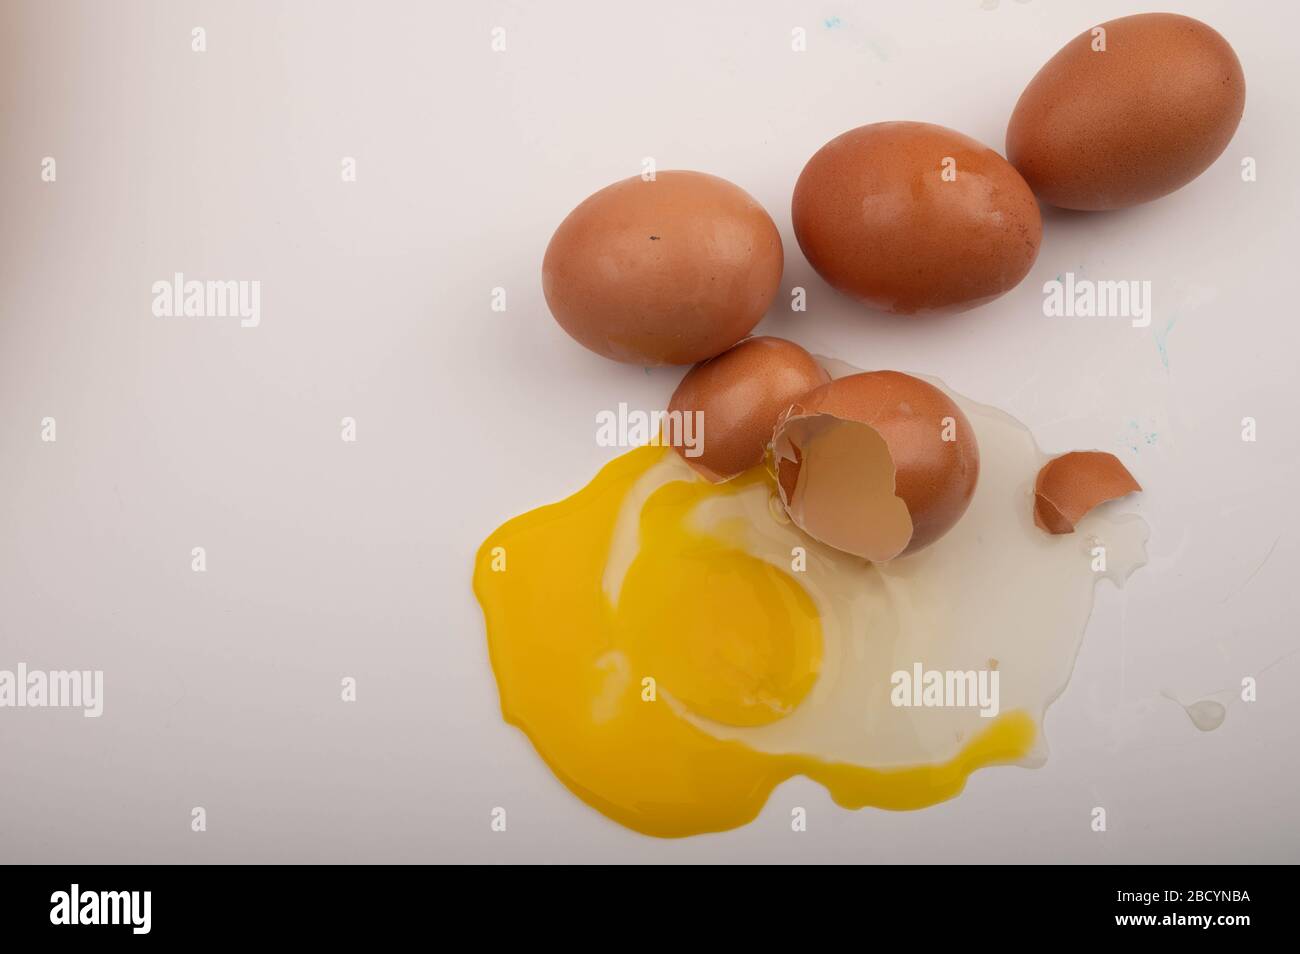 Un uovo di pollo spezzato e uova sparse su sfondo bianco. Primo piano Foto Stock